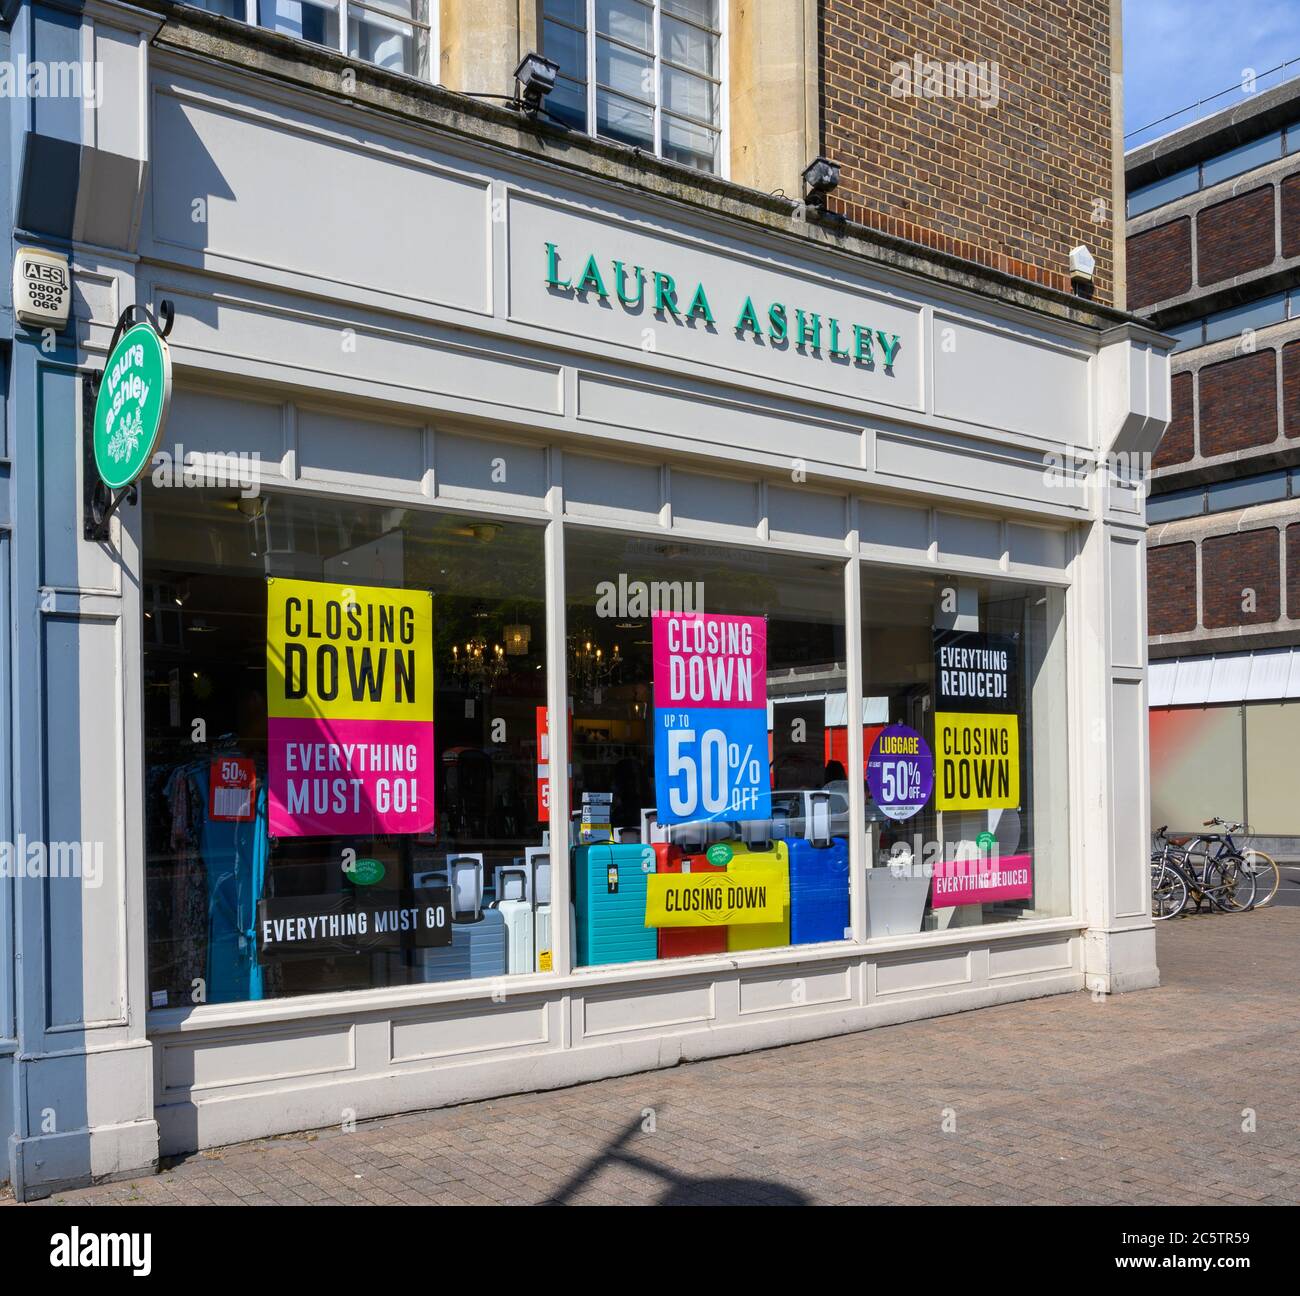 Bromley (Großraum London), Kent, Großbritannien. Laura Ashley Laden in Bromley High Street zeigt das Laura Ashley Logo. Der Laden hat einen Verkaufsabschluss. Stockfoto